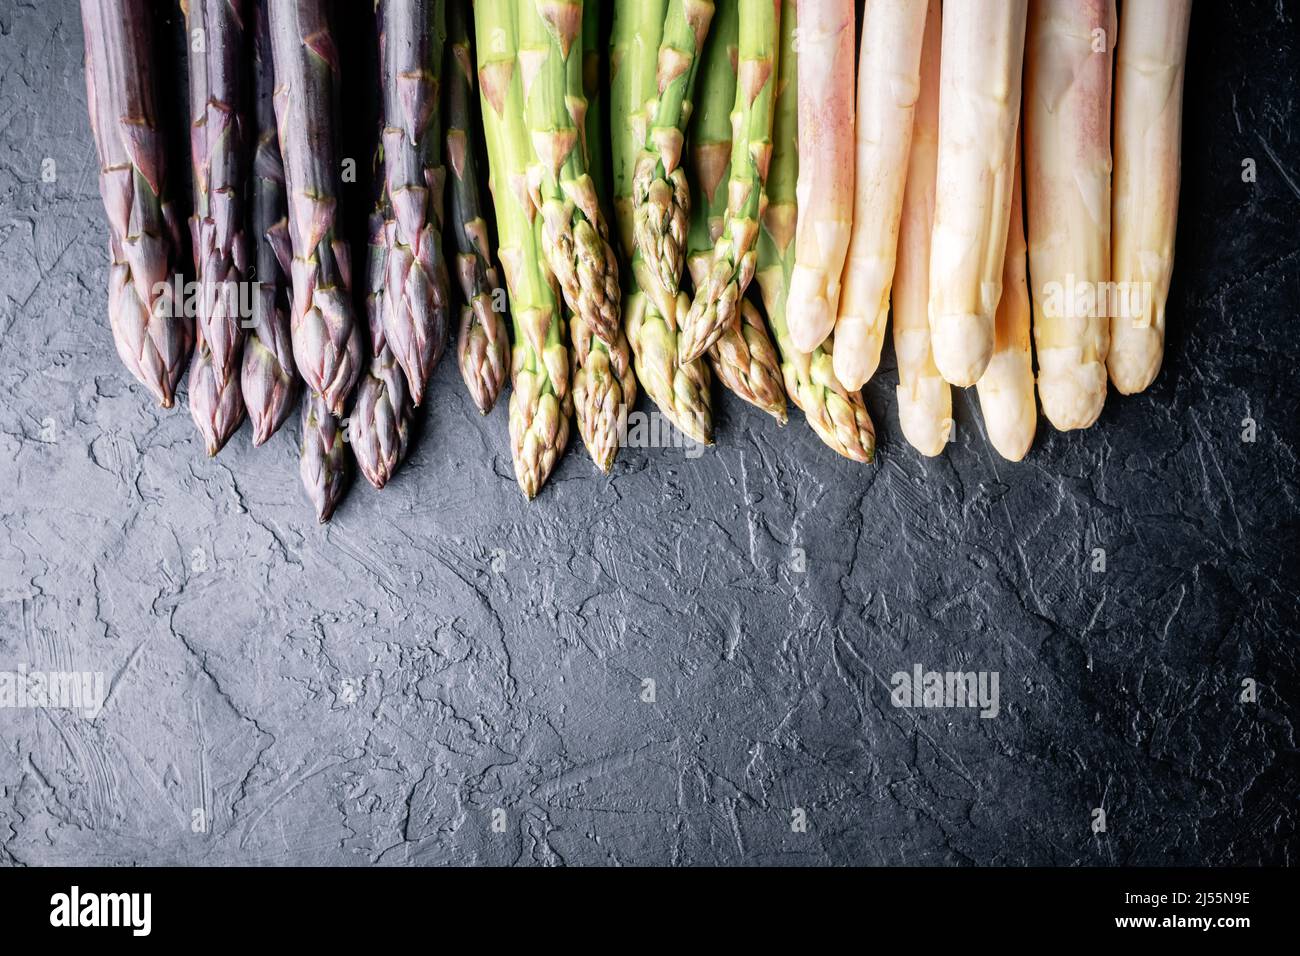 Germogli di asparagi verdi, viola e bianchi sul bordo nero vista dall'alto piatto. Fotografia alimentare Foto Stock